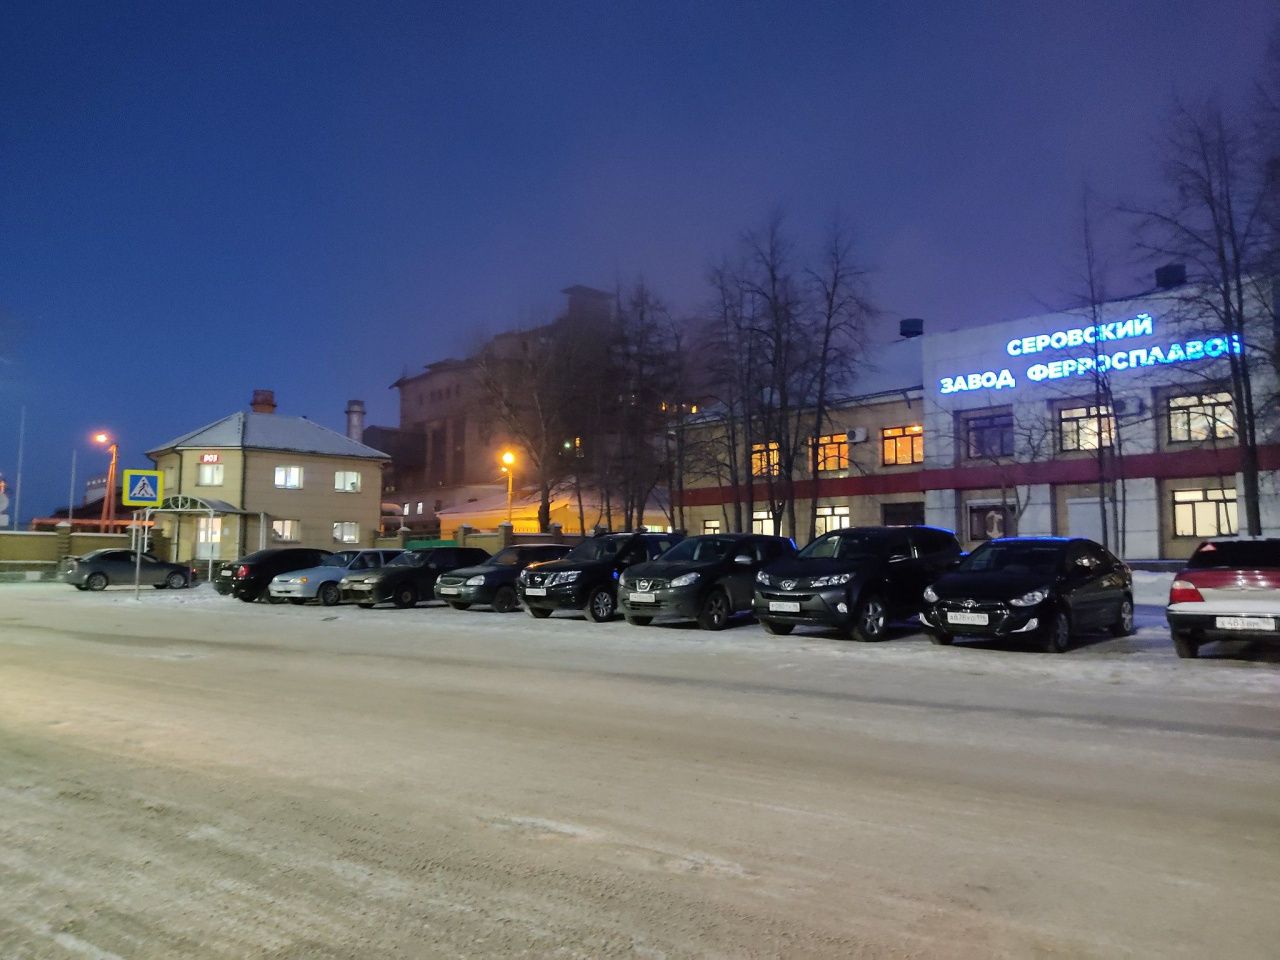 Работник Серовского завода ферросплавов отсудил у предприятия 633 тысячи рублей за травму, полученную в 2018 году